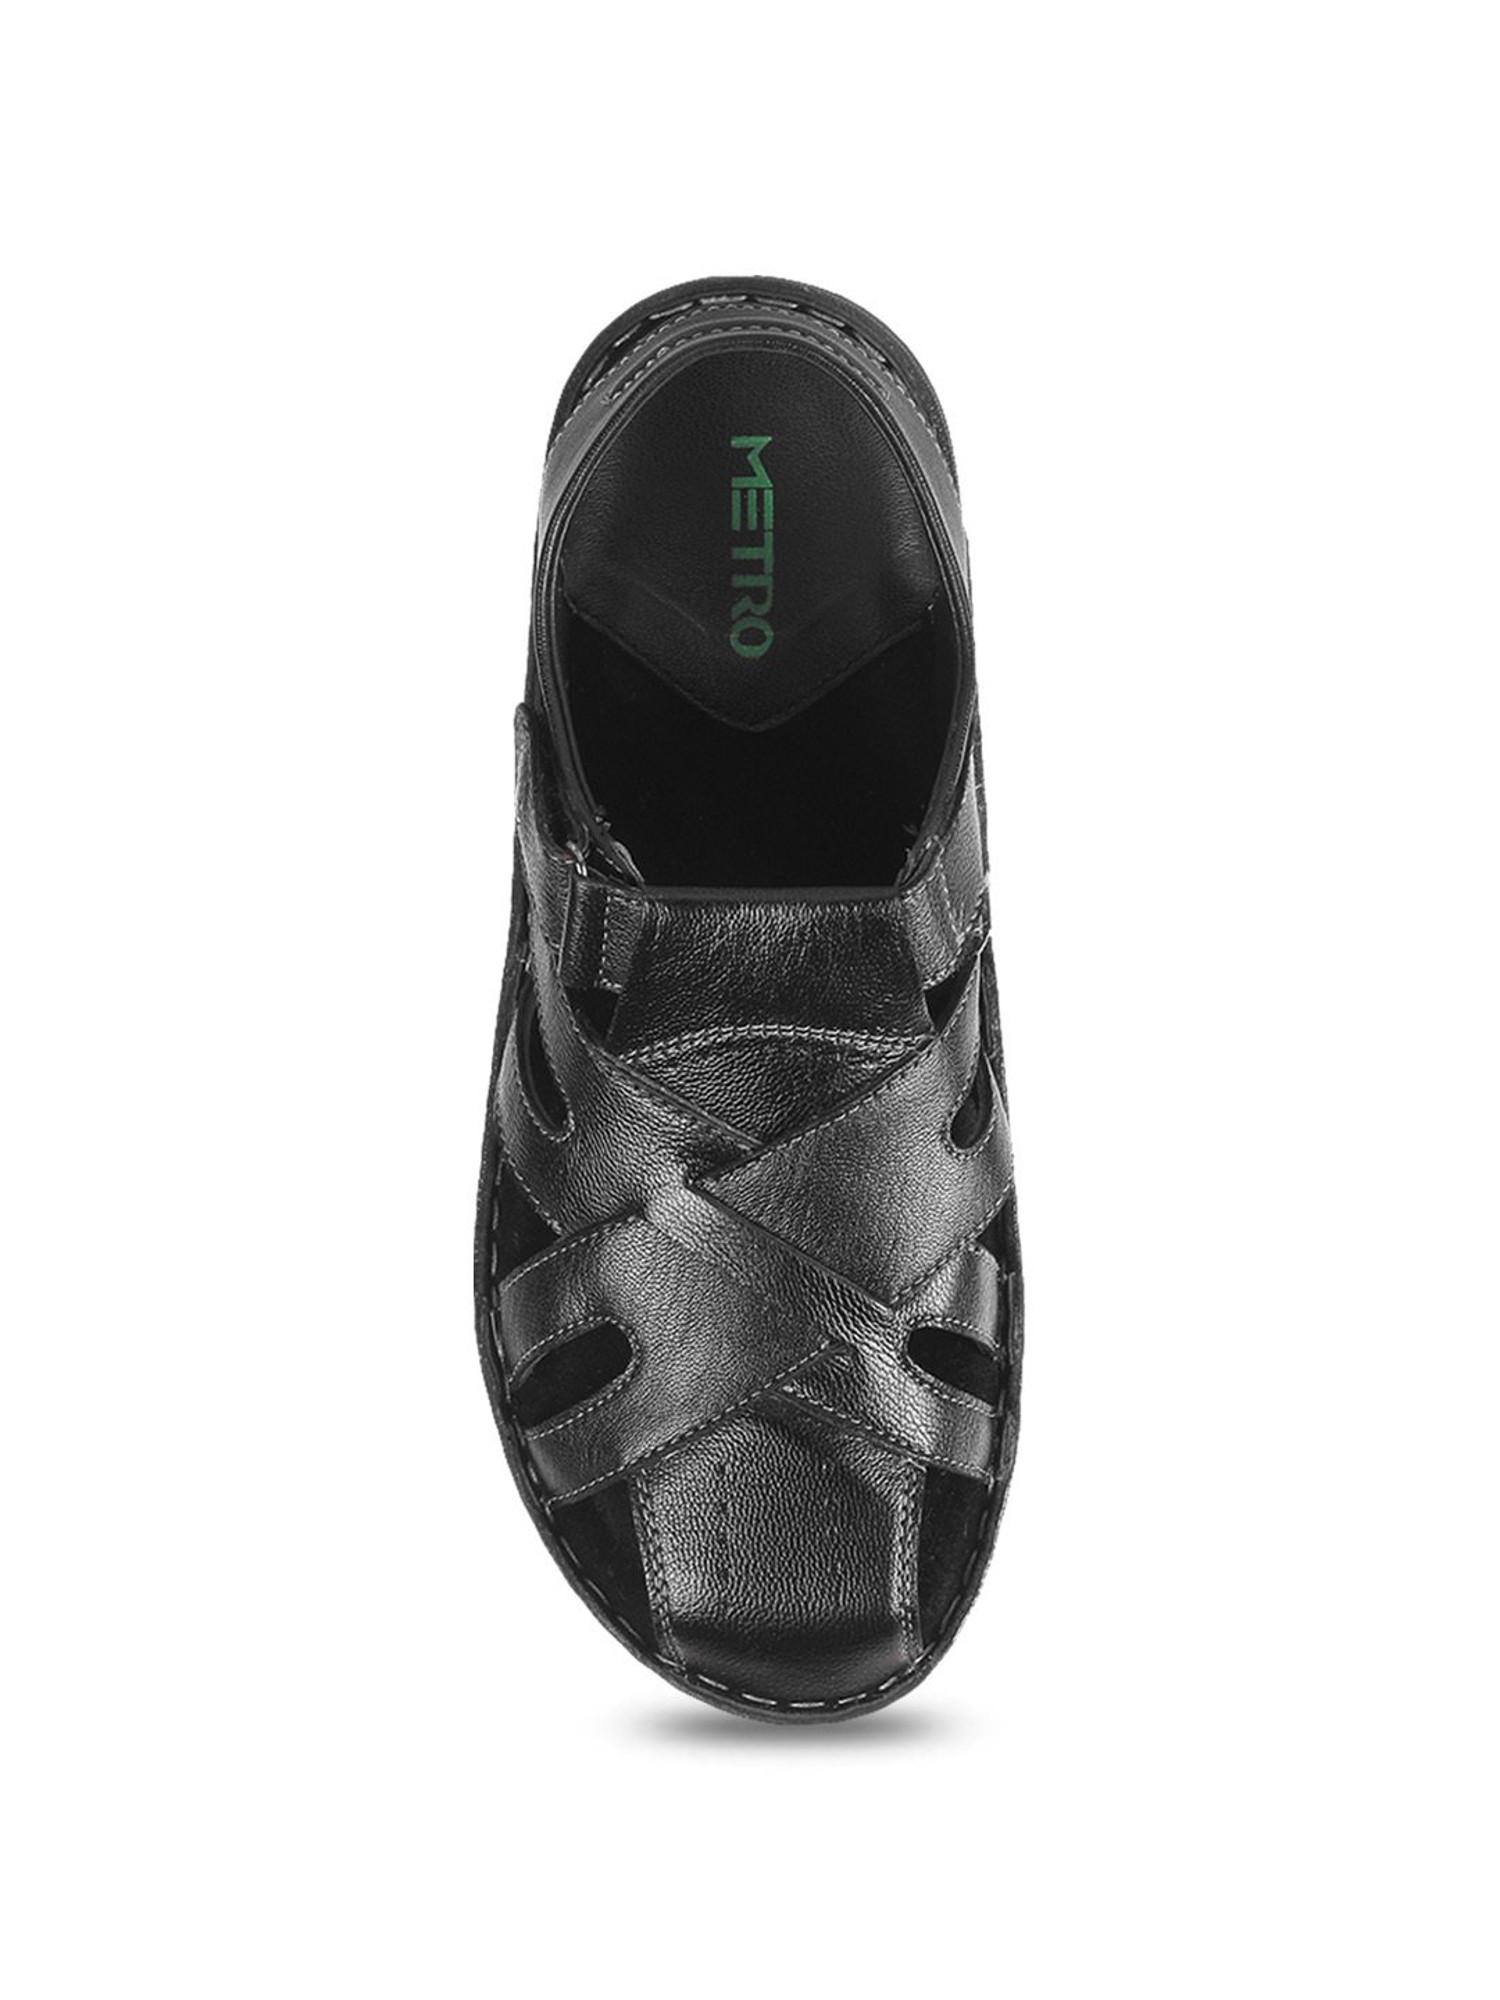 Buy Tan Sandals for Men by Metro Online | Ajio.com-sgquangbinhtourist.com.vn